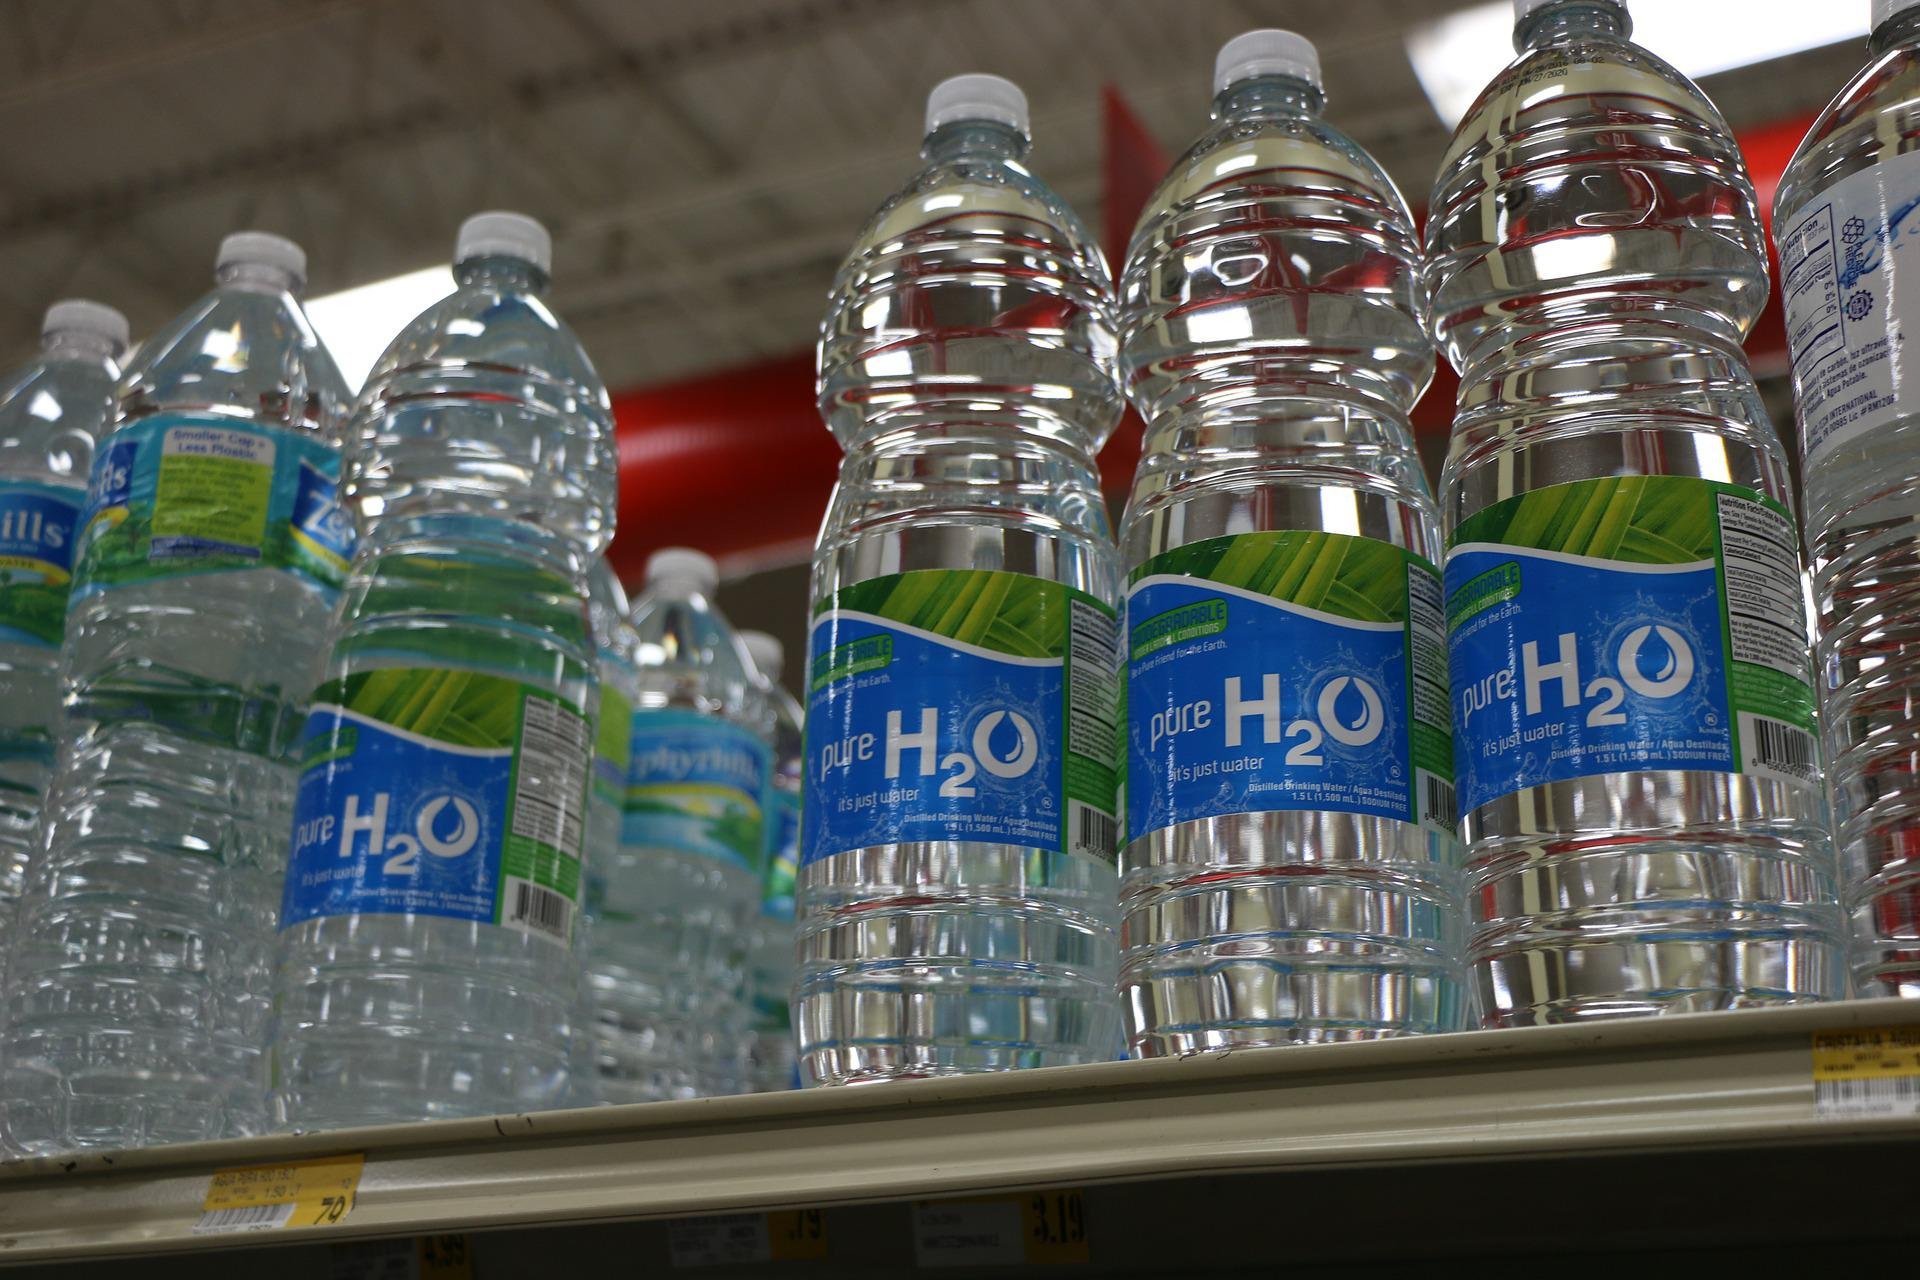 Fulco Pratesi acqua supermercato veleno minaccia iniezioni